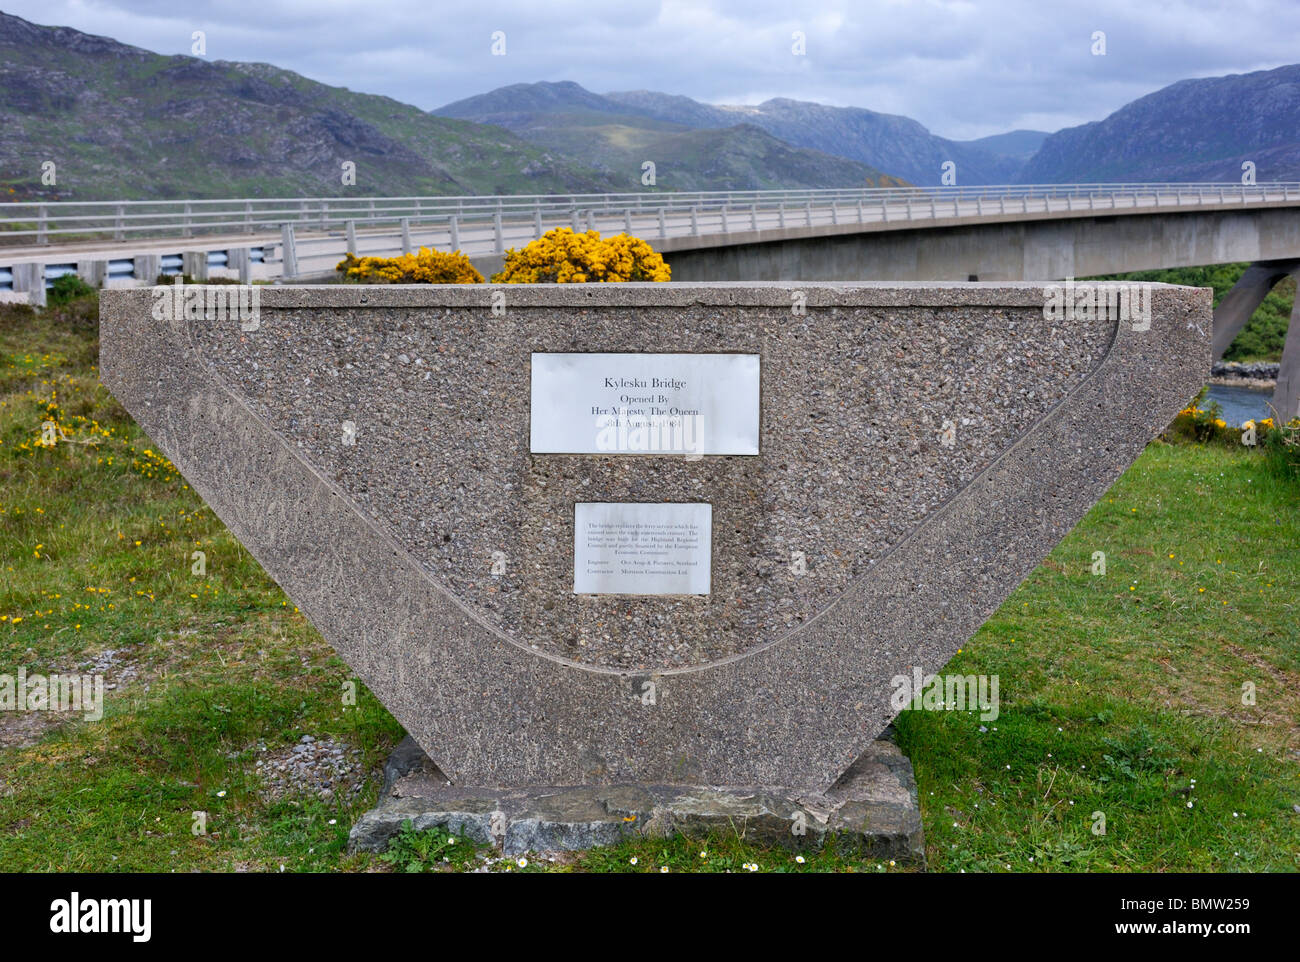 Targhe commemorative. Ponte Kylescu, Sutherland, Scotland, Regno Unito, Europa. Foto Stock